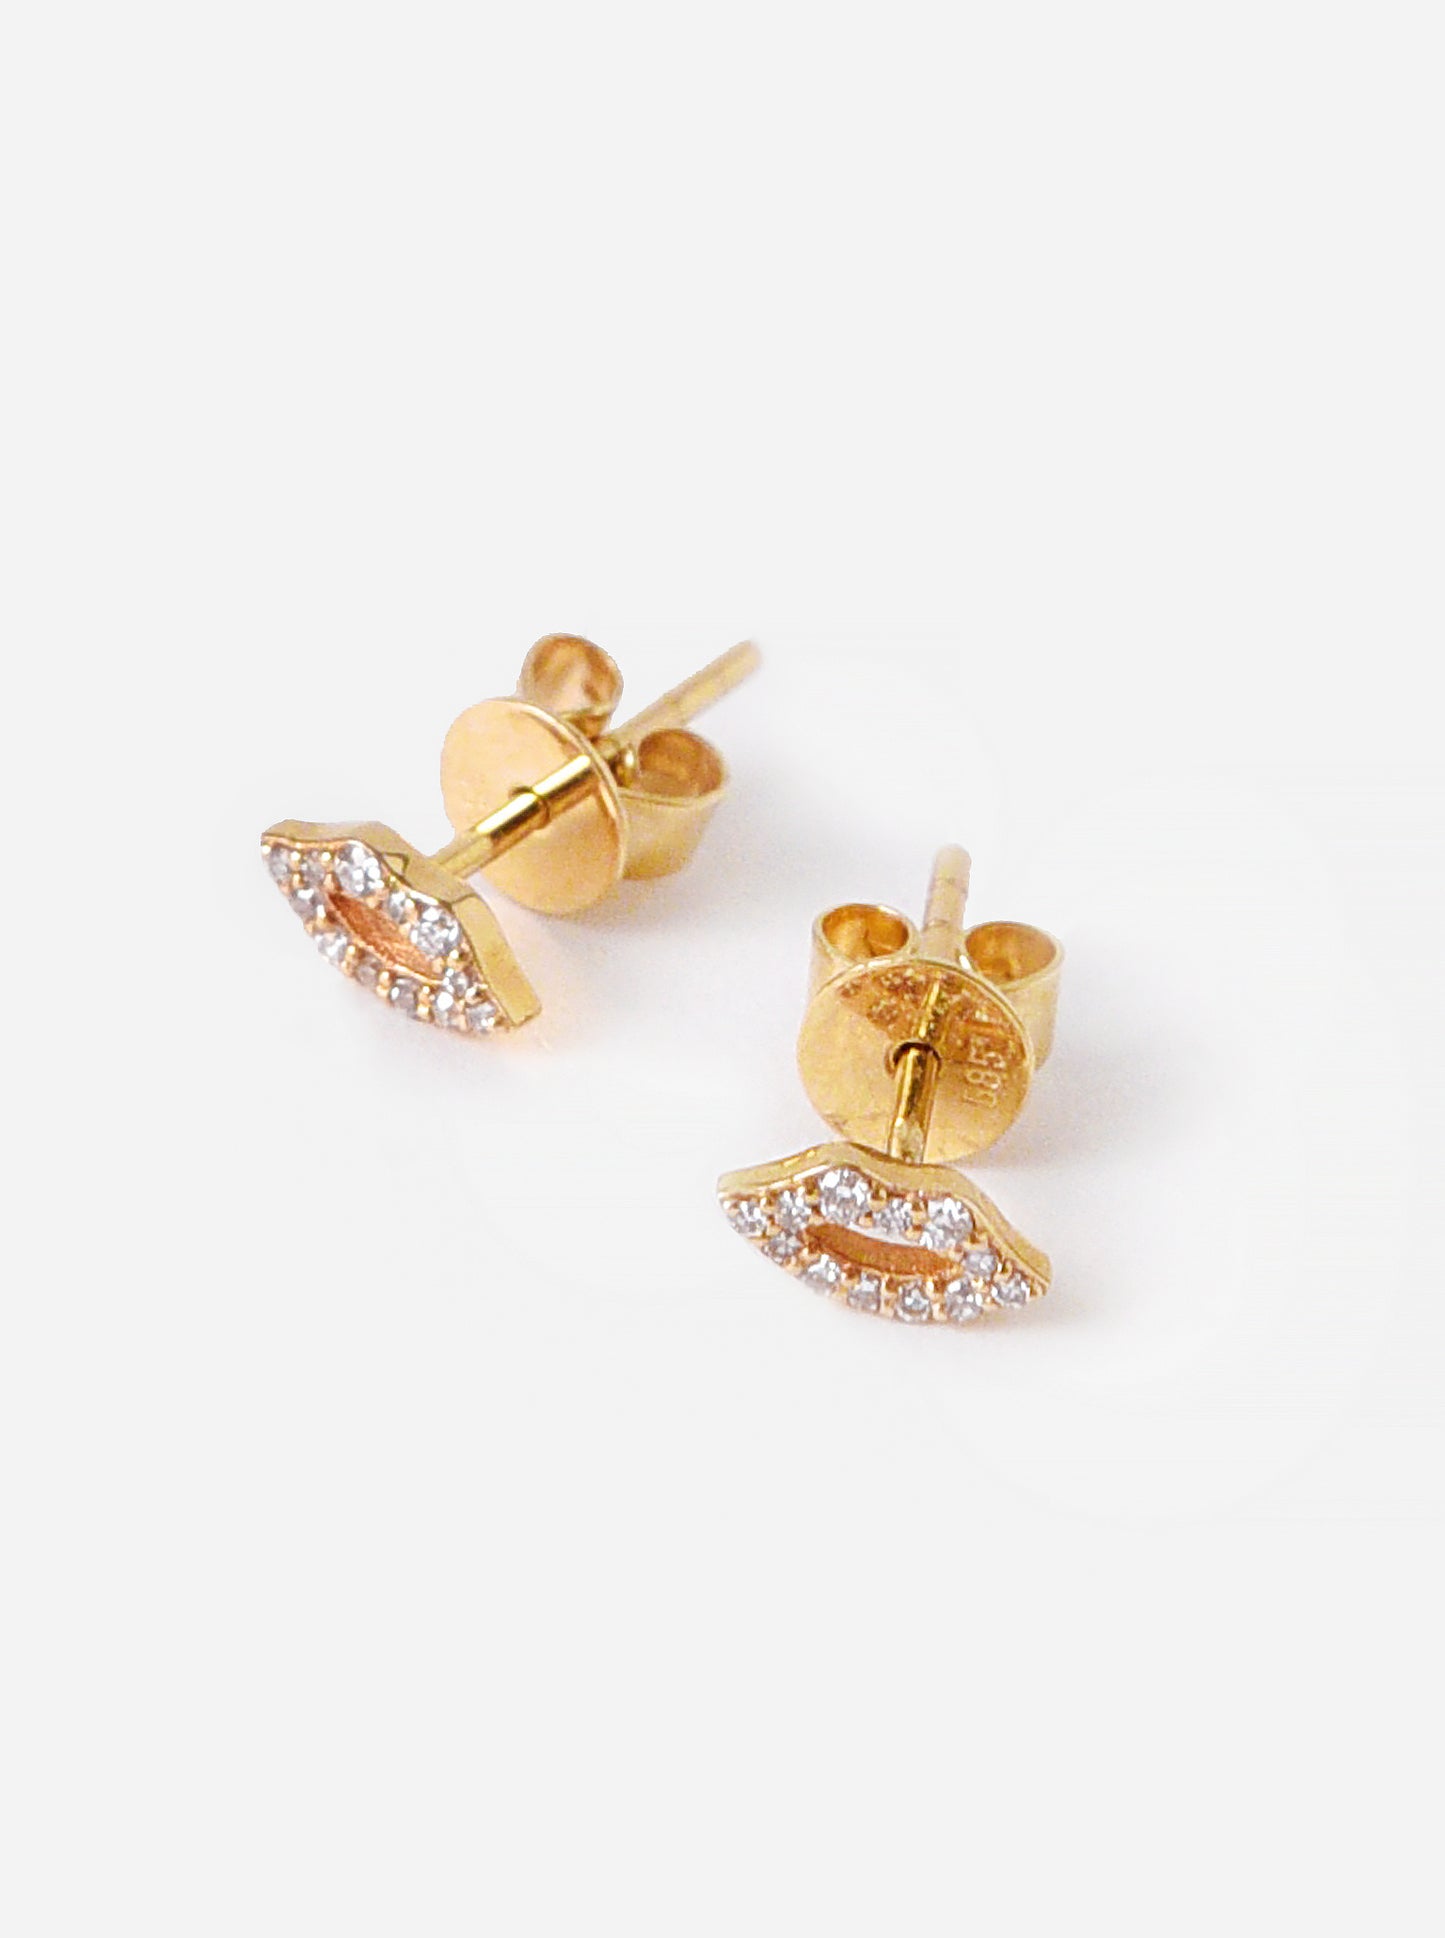 S. Bell Women's Mini Diamond Lip Stud Earrings